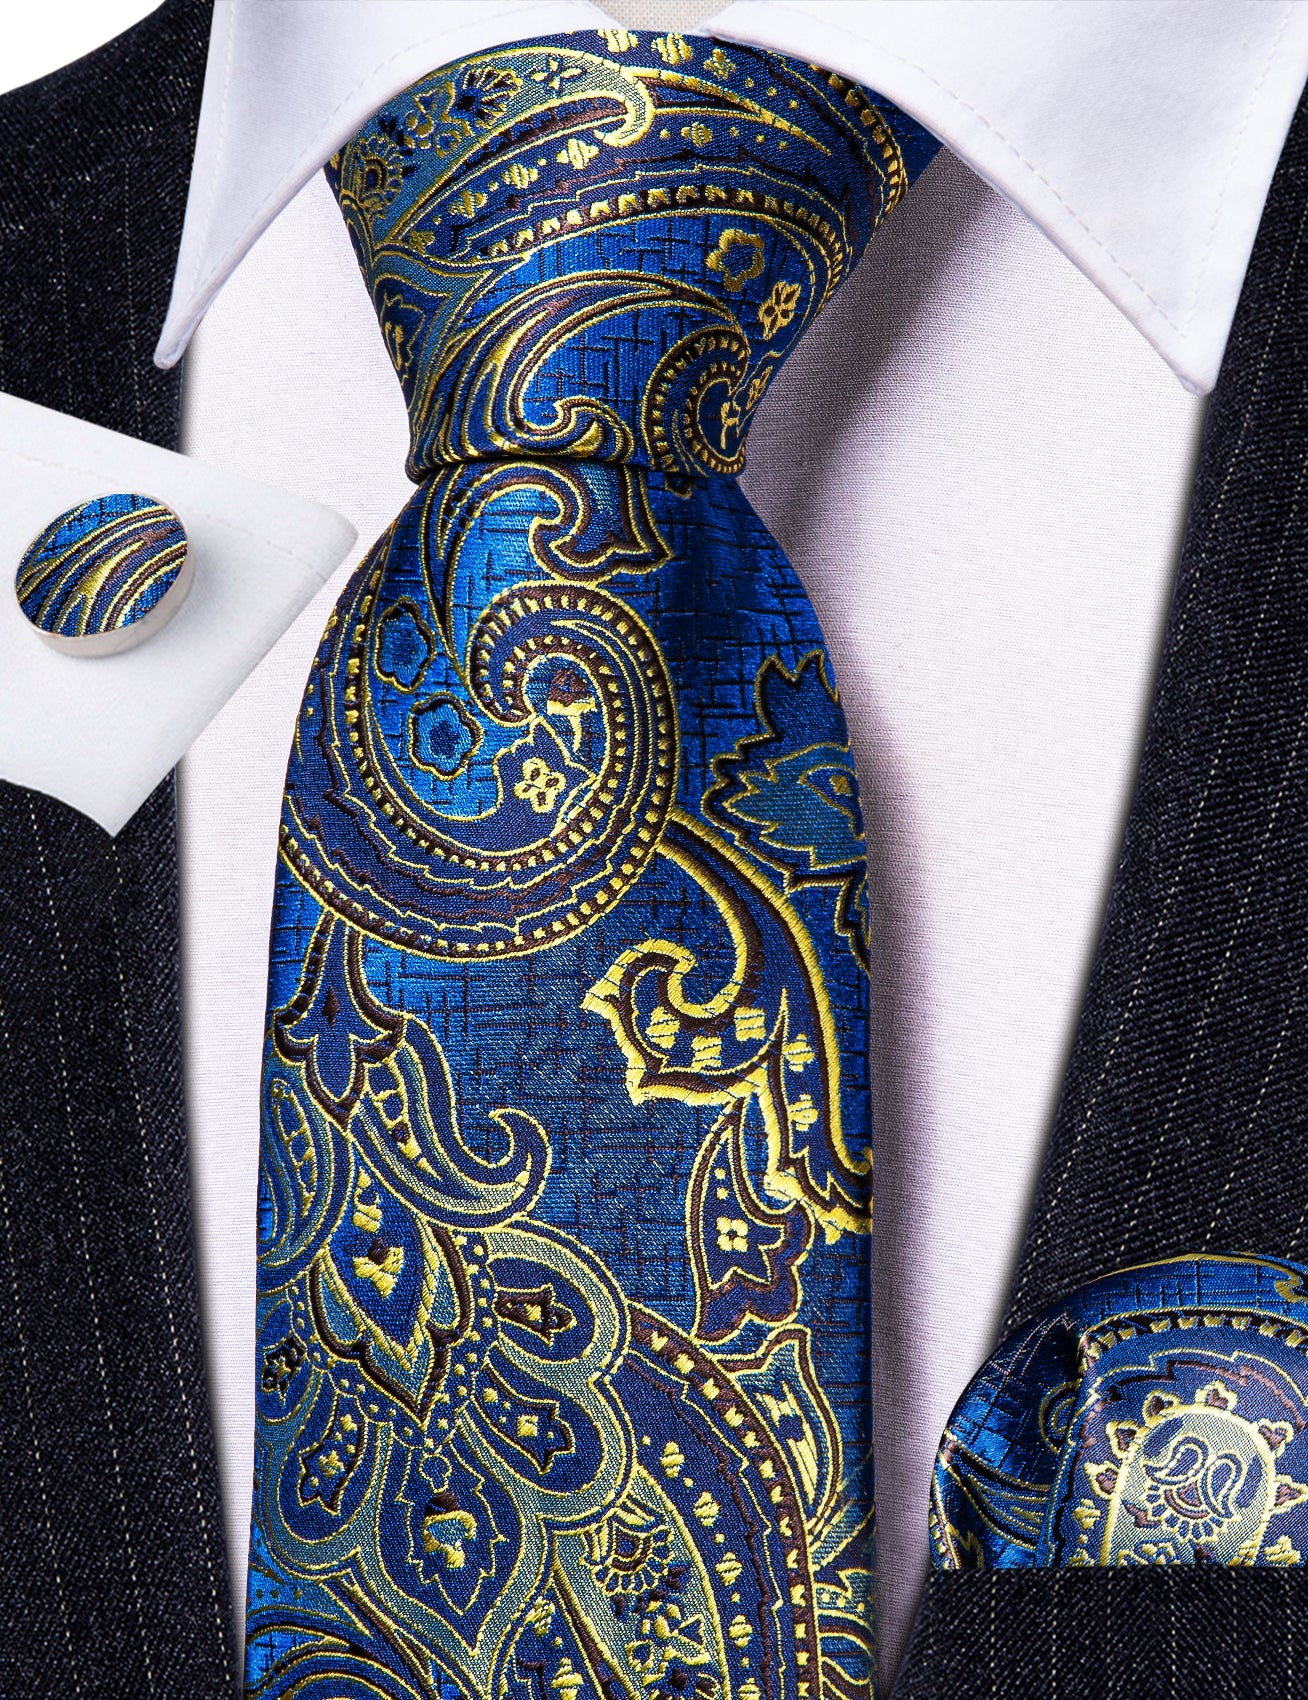 men's suit Royal blue necktie light yellow jacquard paisley men's necktie